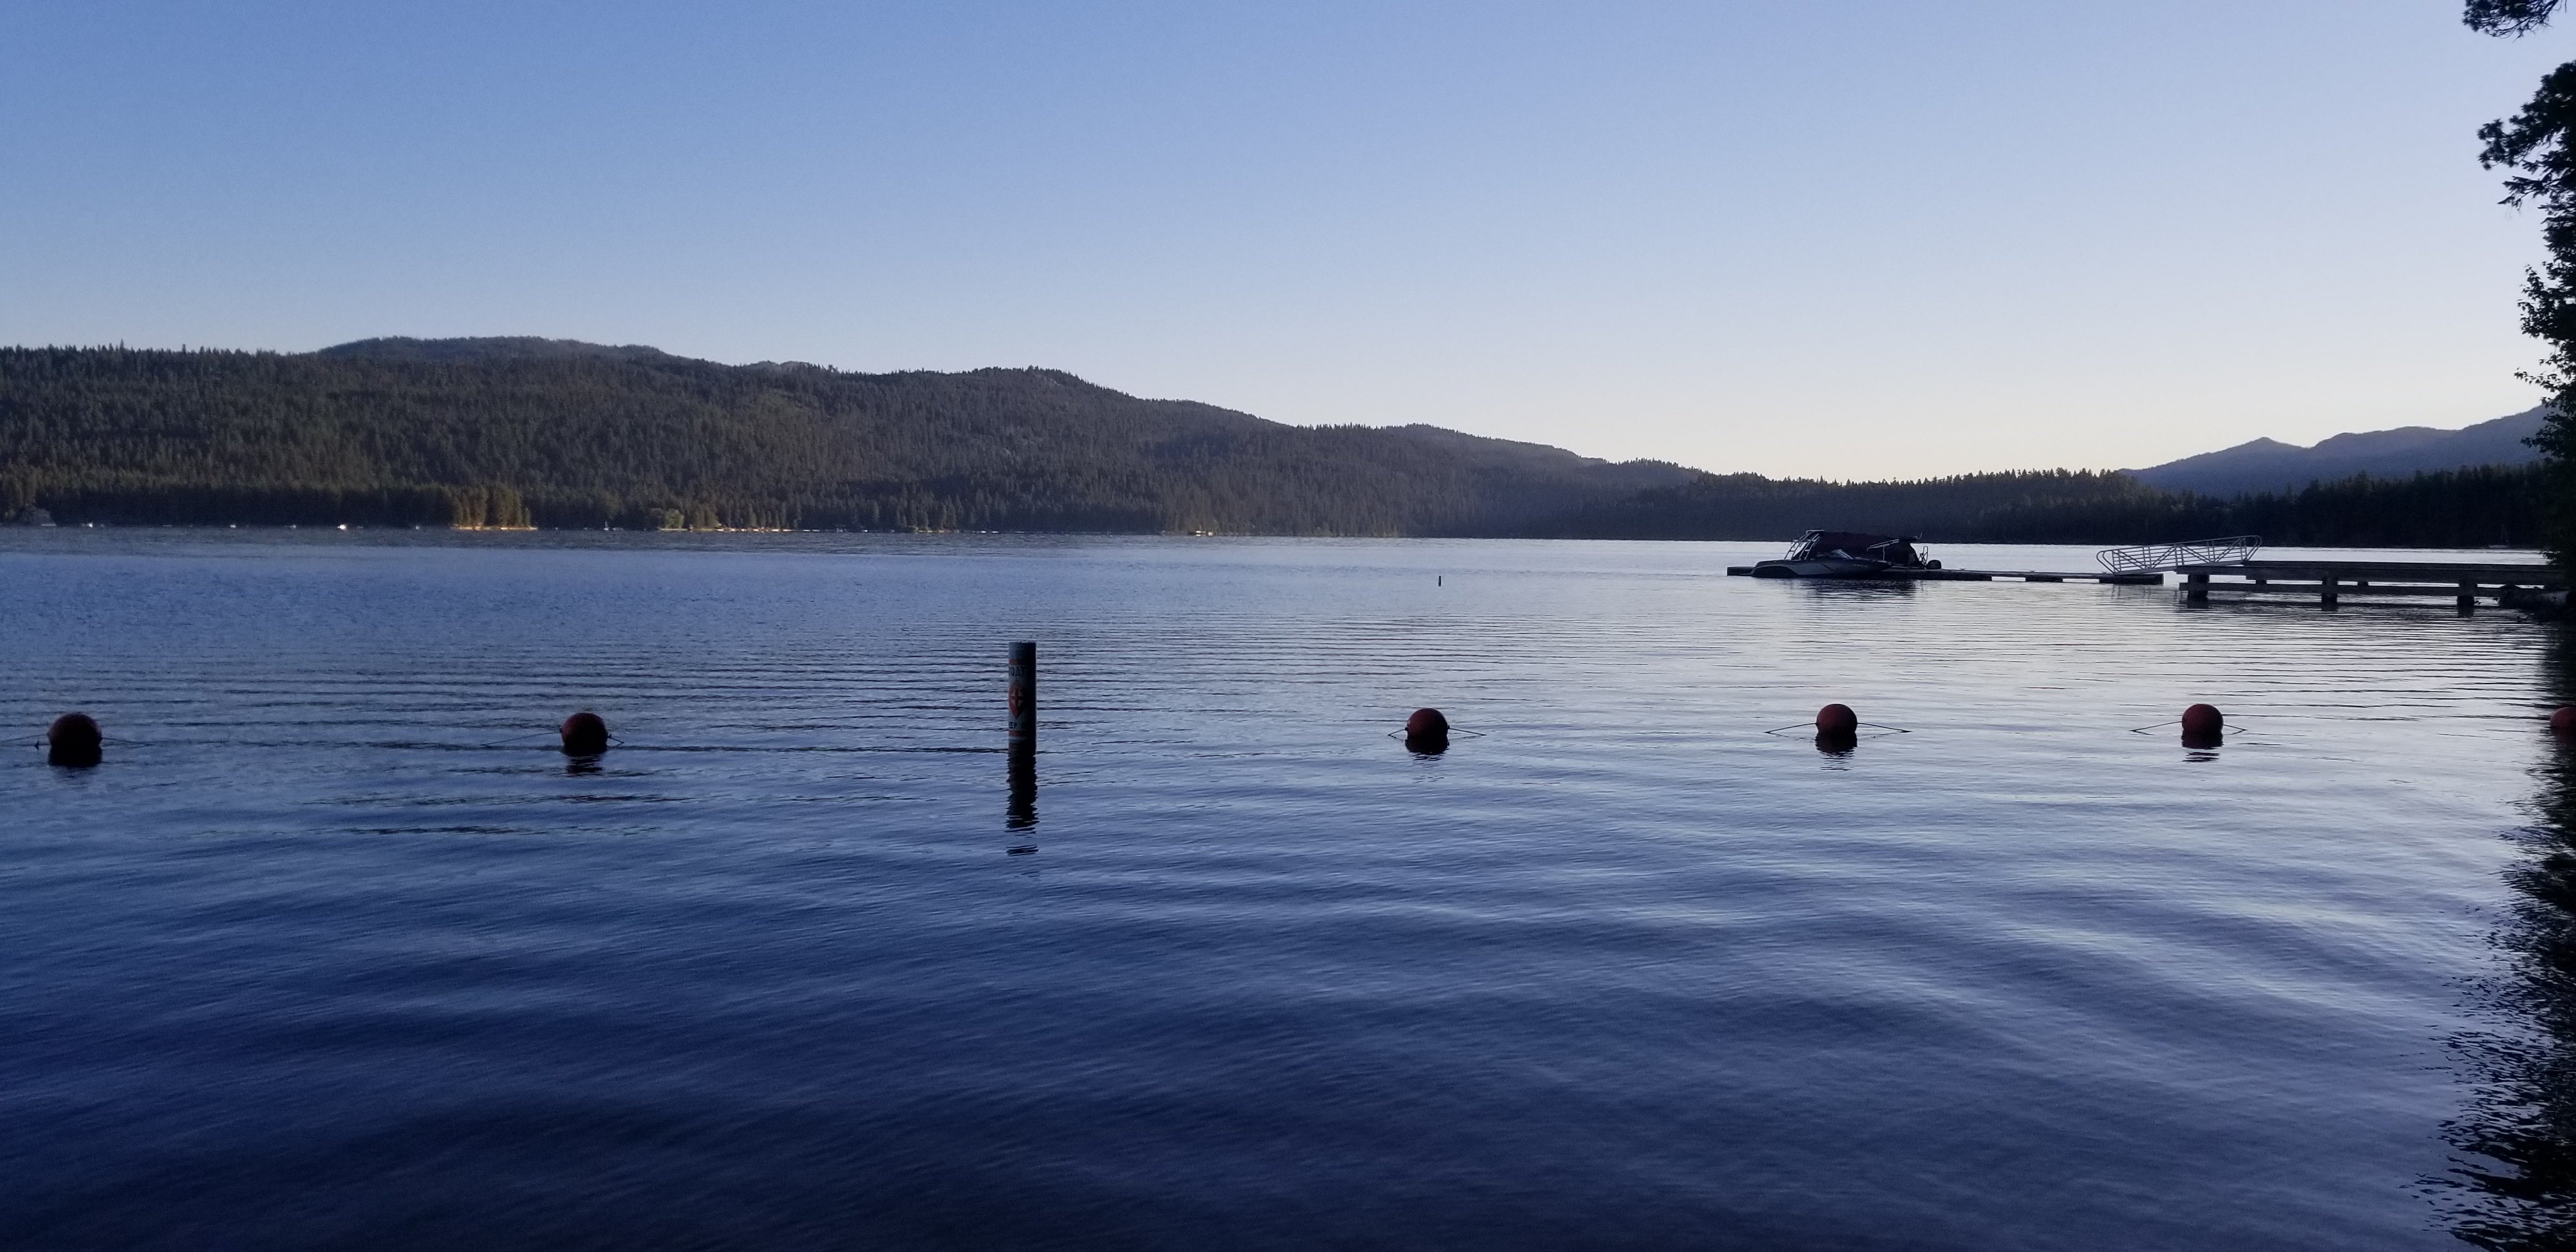 Morning view at the lake
